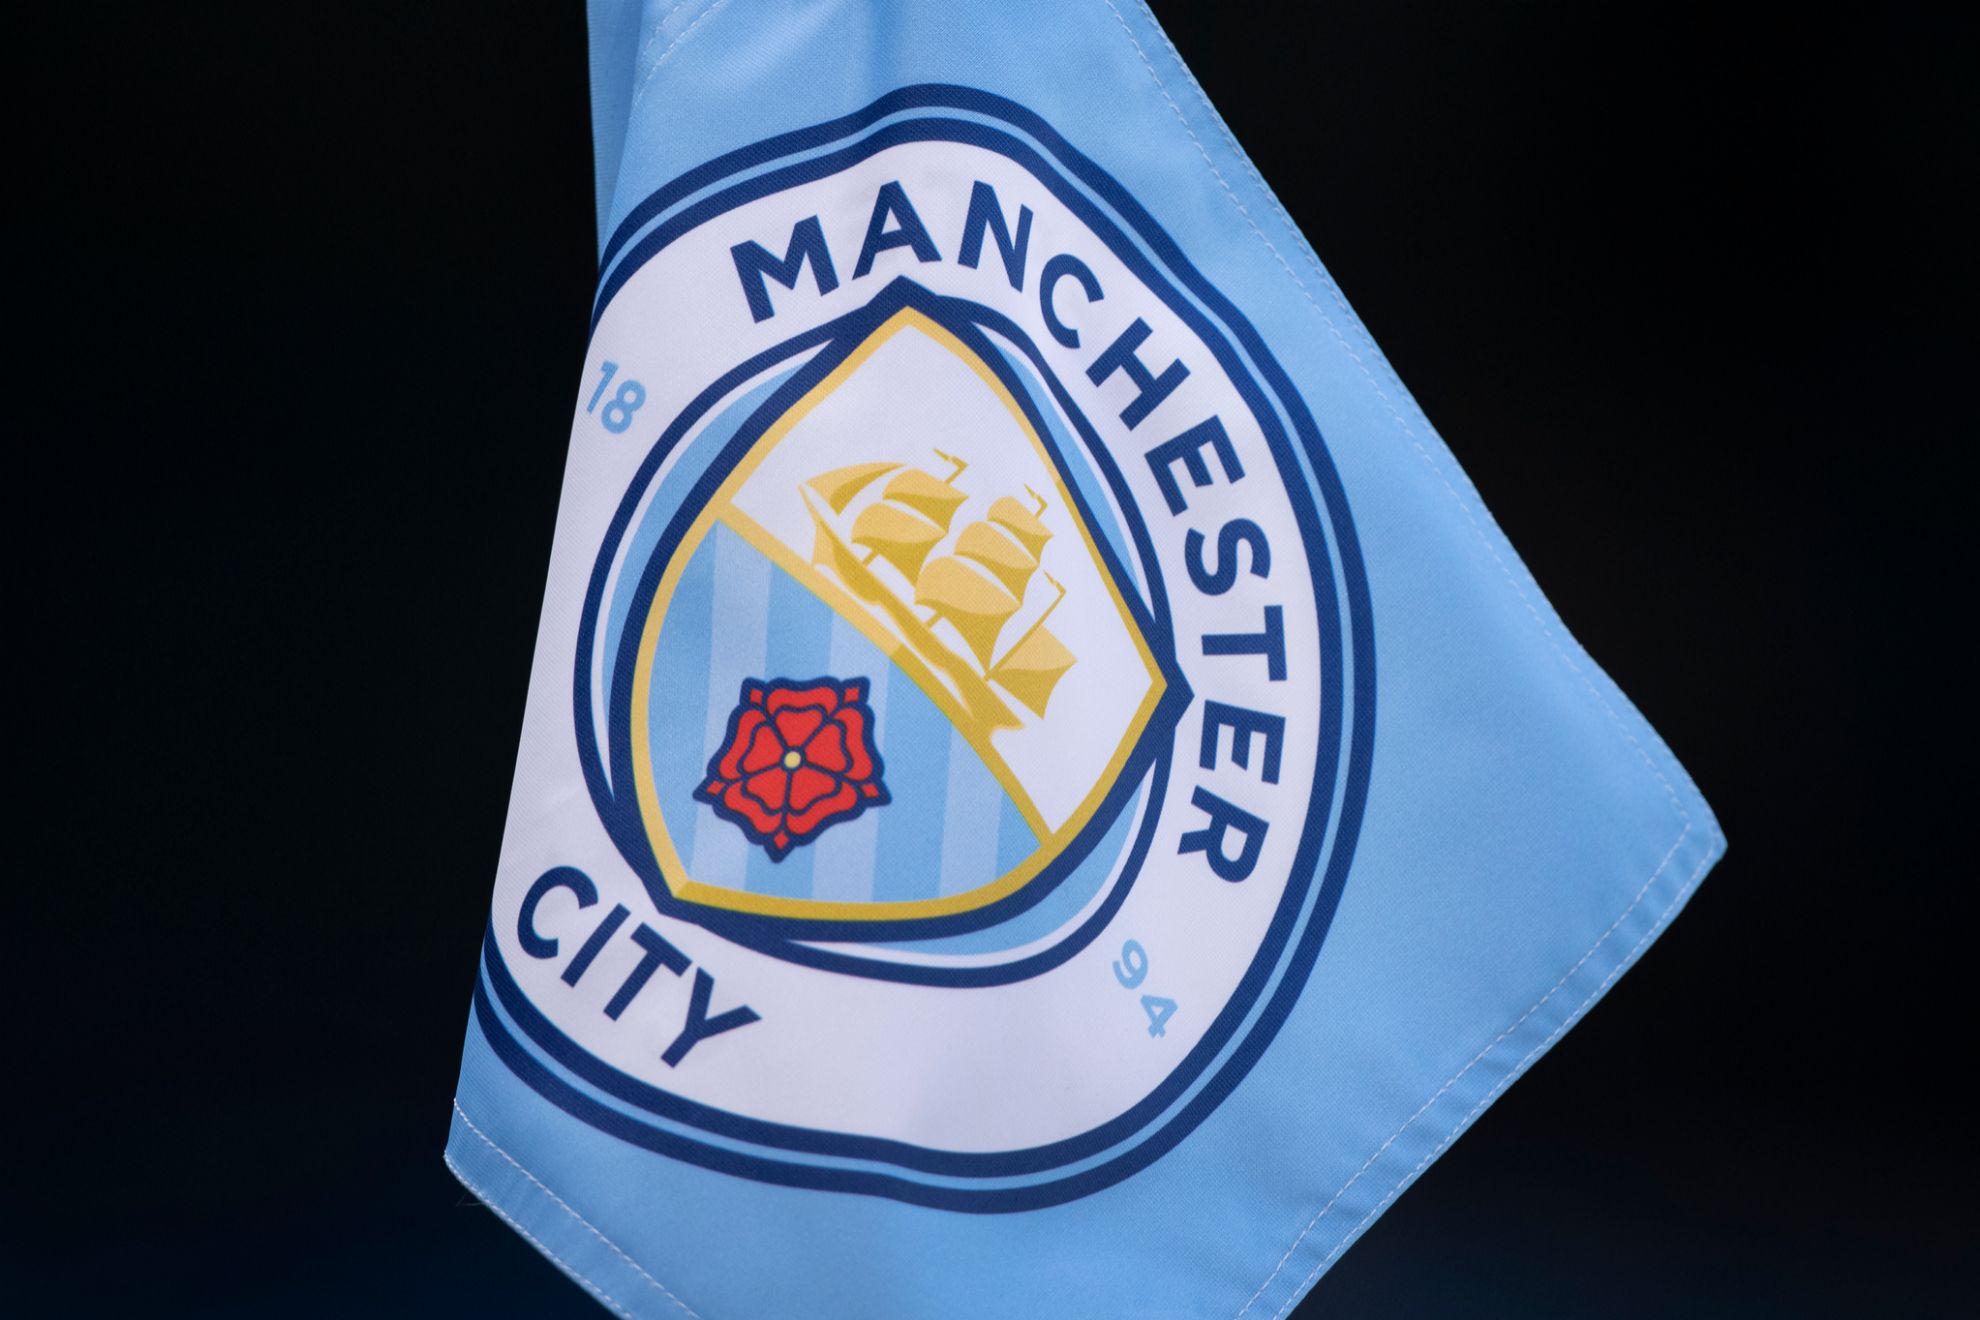 El escudo del Manchester City, en un banderín de córner.